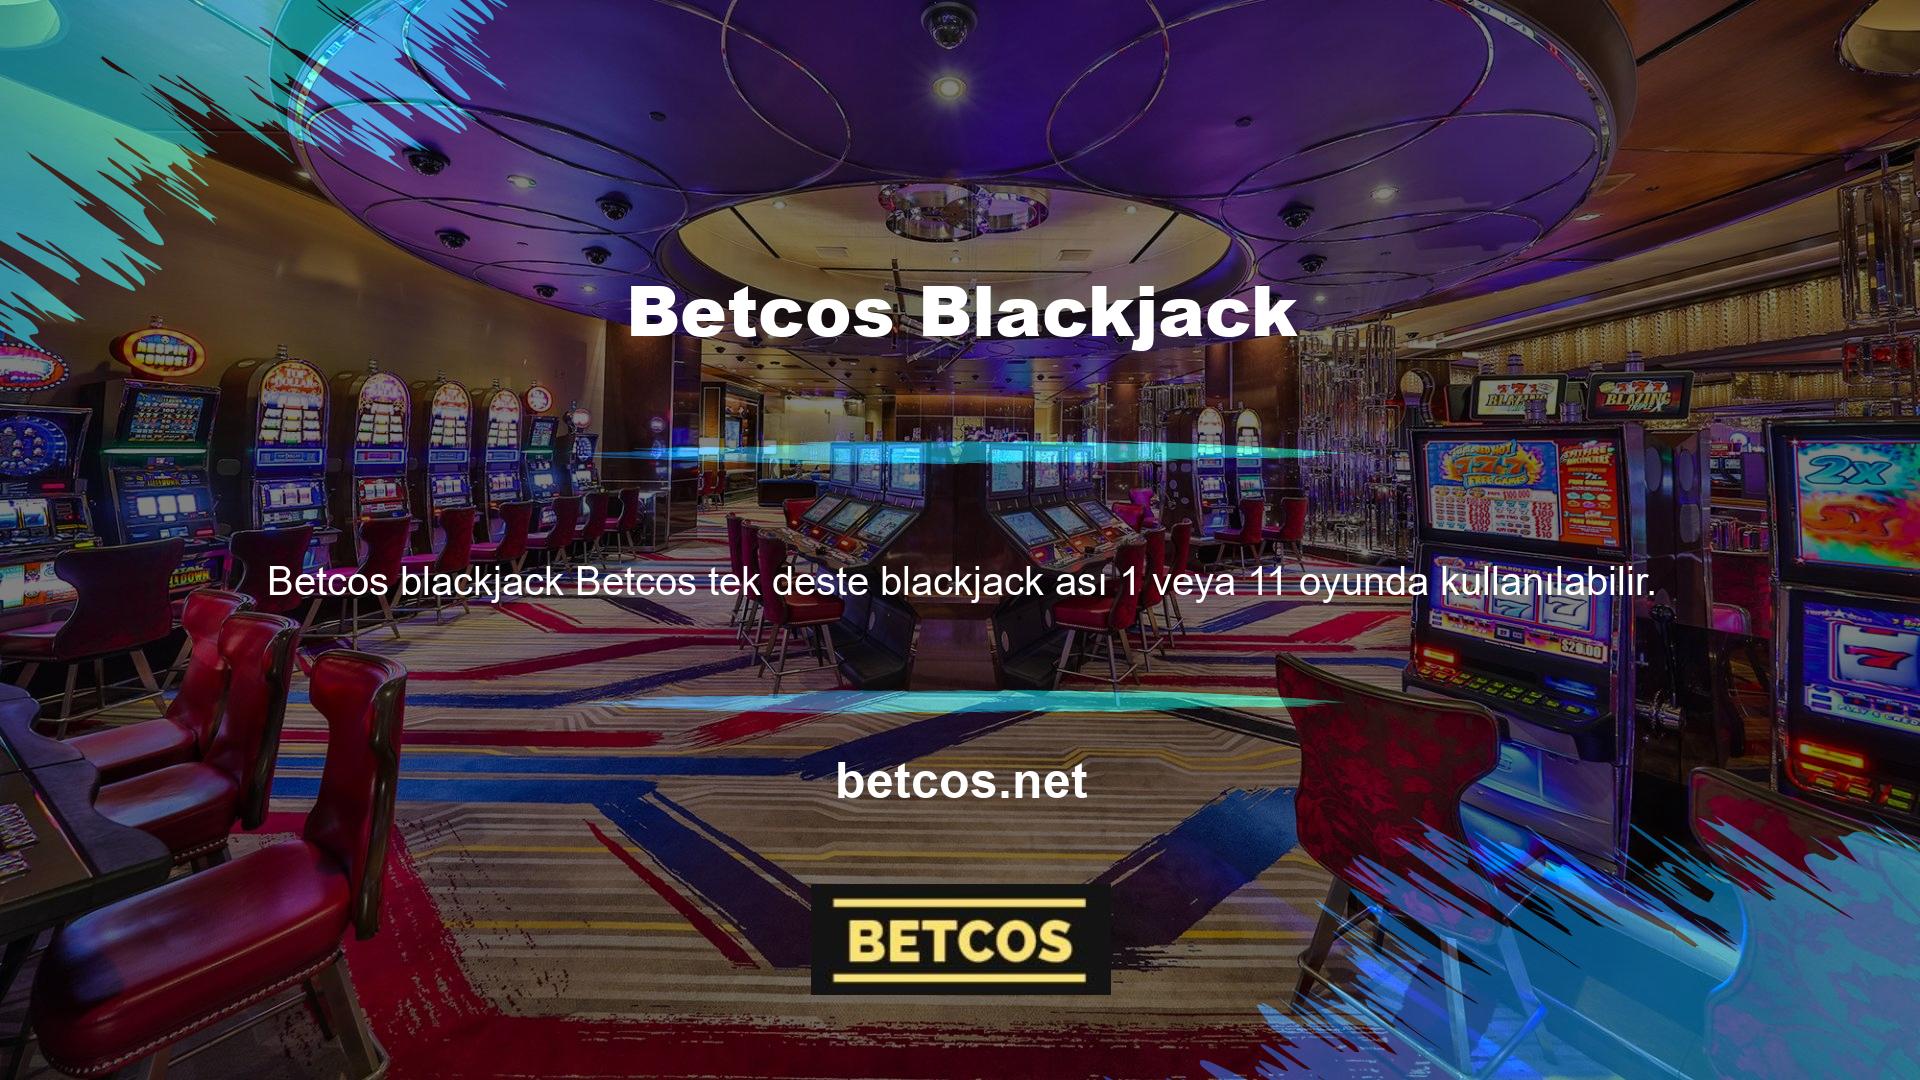 Casino sitesi Betcos üyeleri, blackjack masasında oturan kişilere ve masayı yöneten krupiyelere kart dağıtır